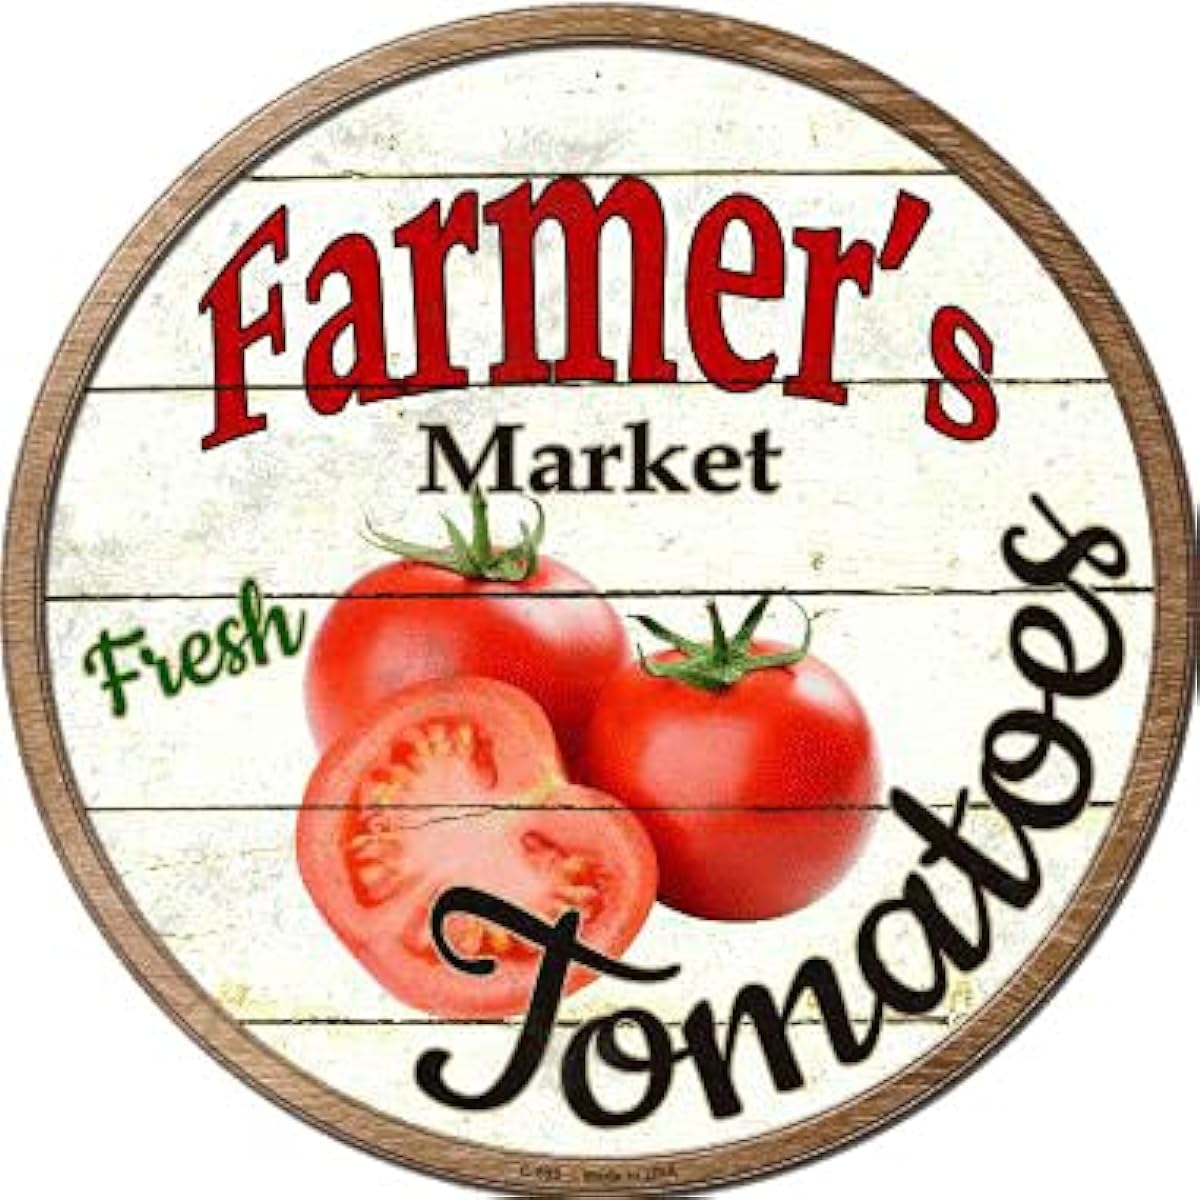 Farmers Market Carrots Onions Strawberries Tomates Bleures Metal Circular Sign, adapté aux marchés Supermarchés et fermes